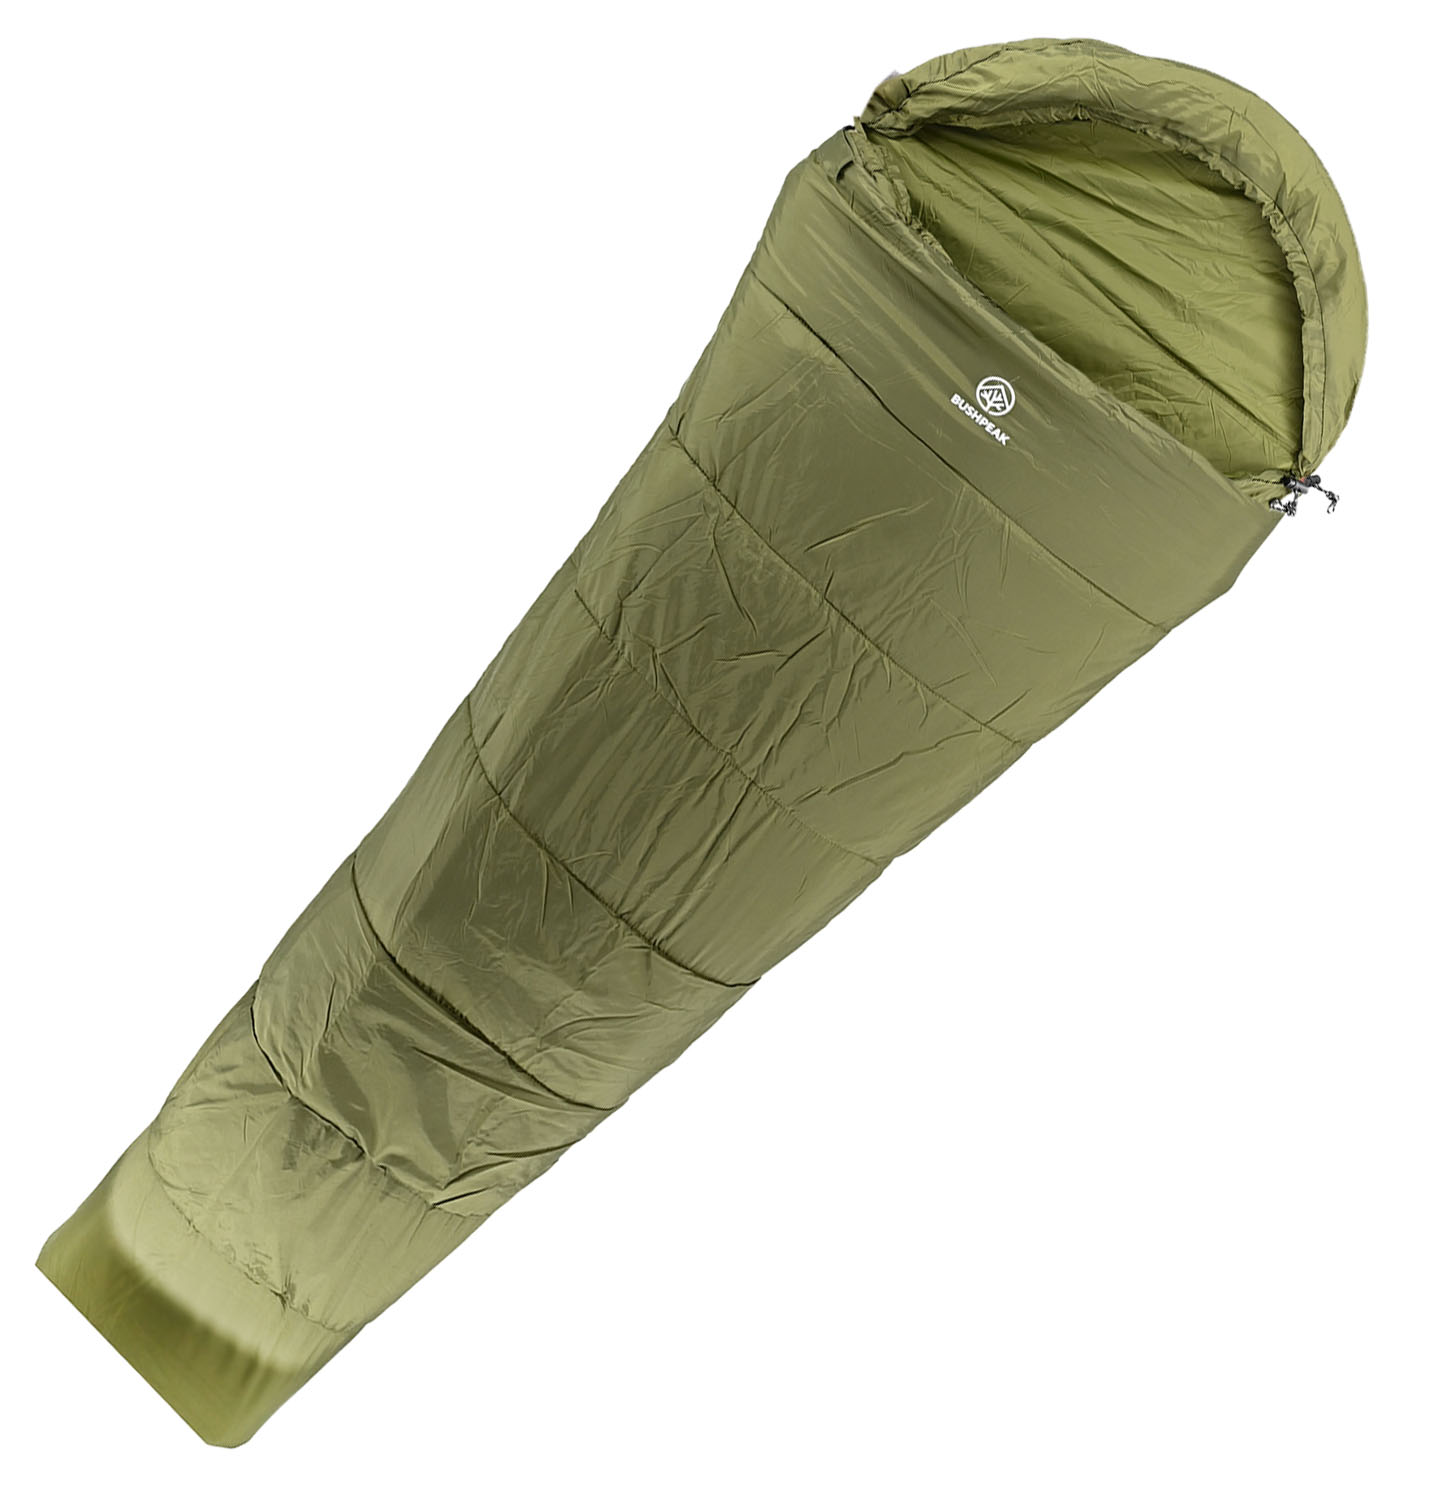 Set Zelt Ultraleicht Fast und 2 Schlafsäcke Comfort